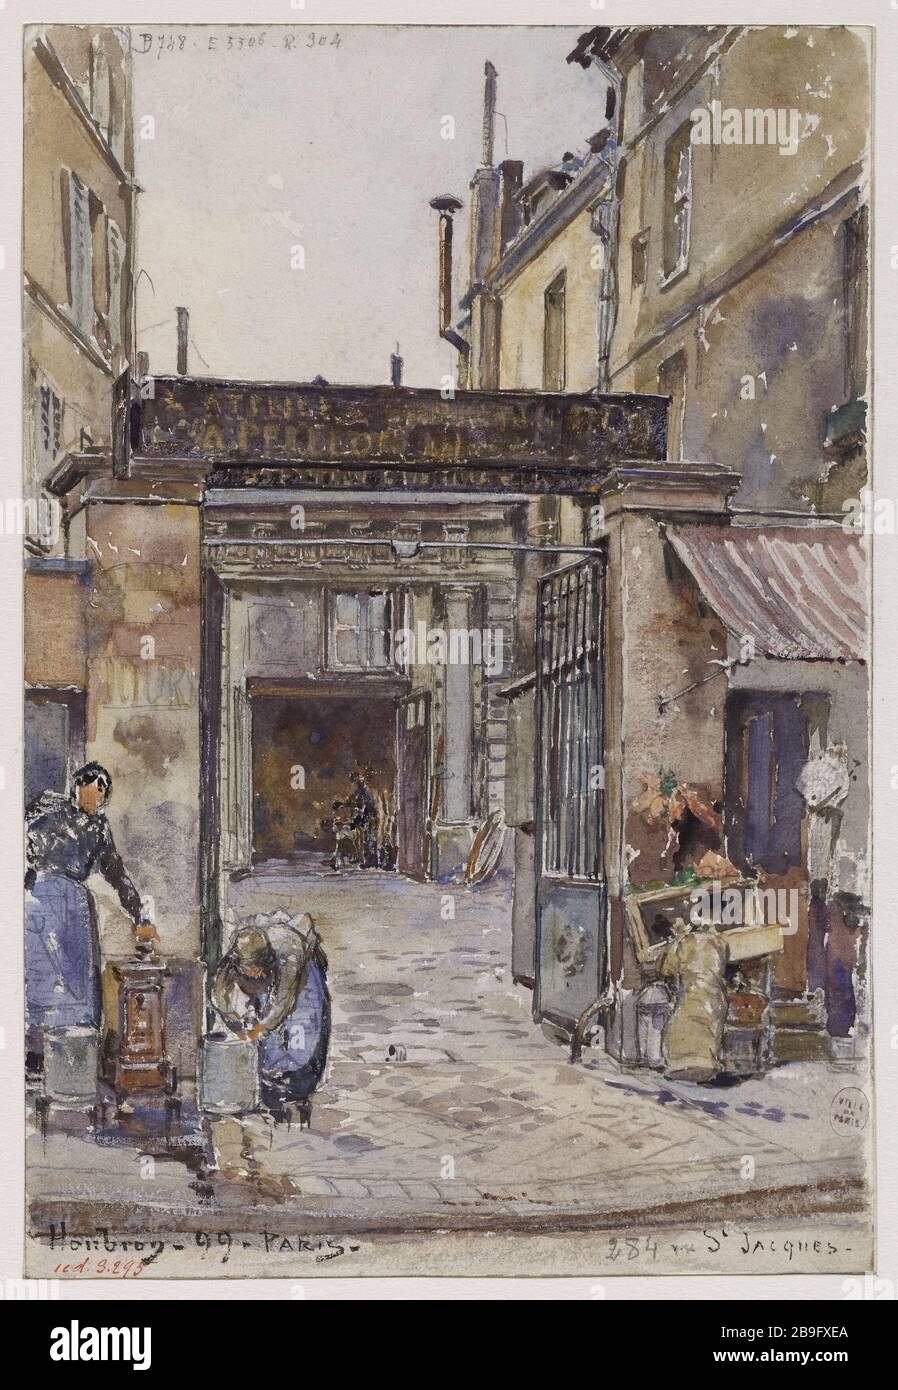 284 RUE ST JACQUES Frédéric-Anatole Houbron (1851-1908). '284 rue St Jacques'. Aquarelle, 1899. Paris, musée Carnavalet. Stock Photo